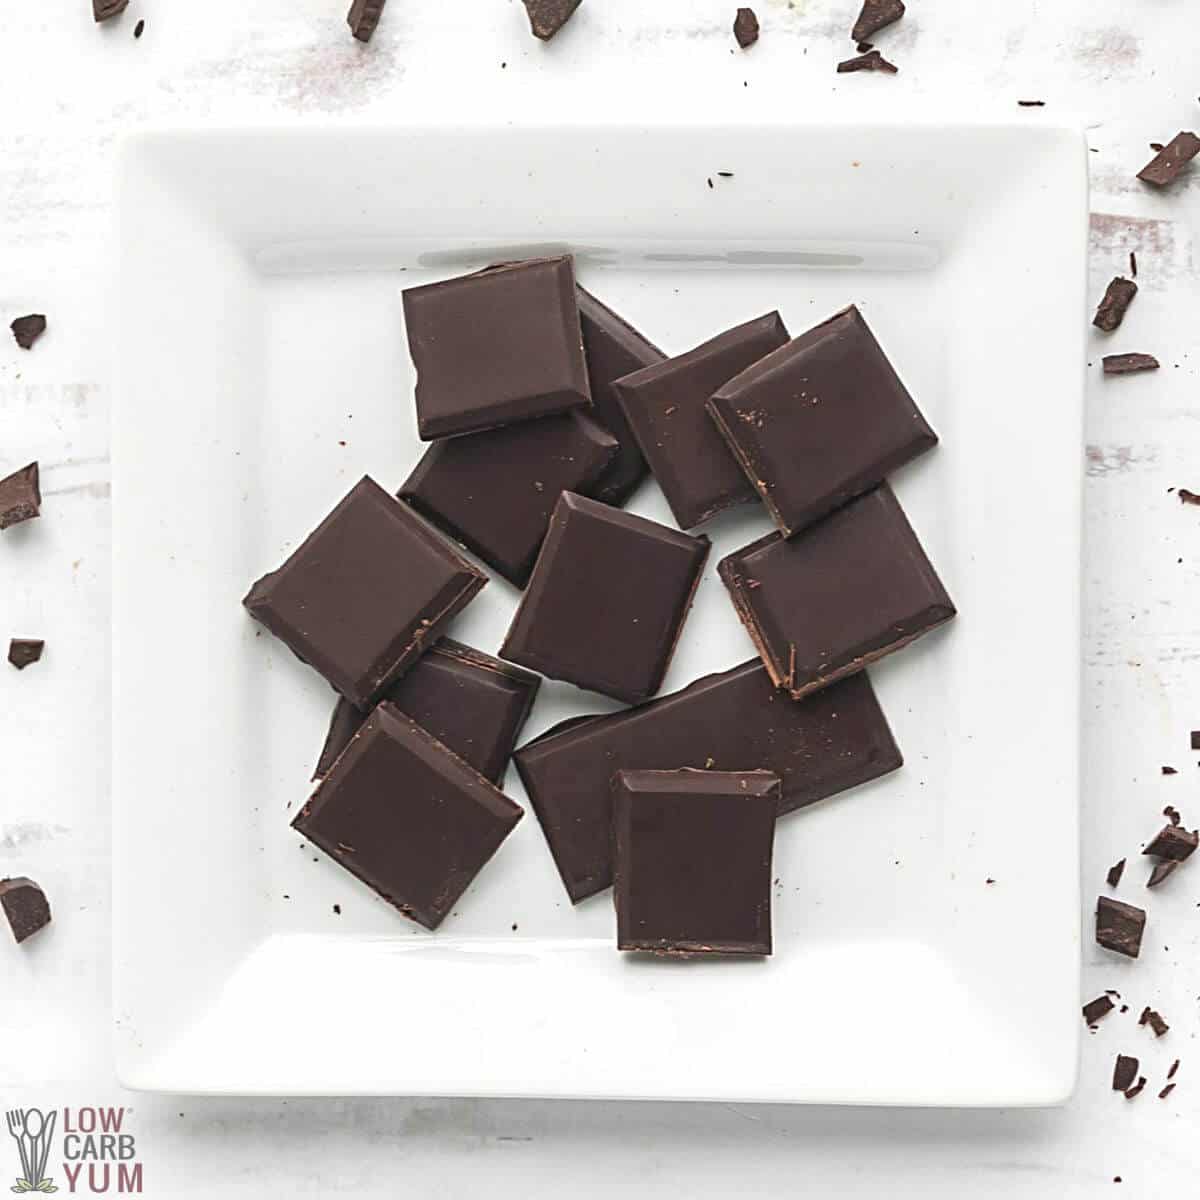 keto mørk sjokolade på en firkantet hvit tallerken.